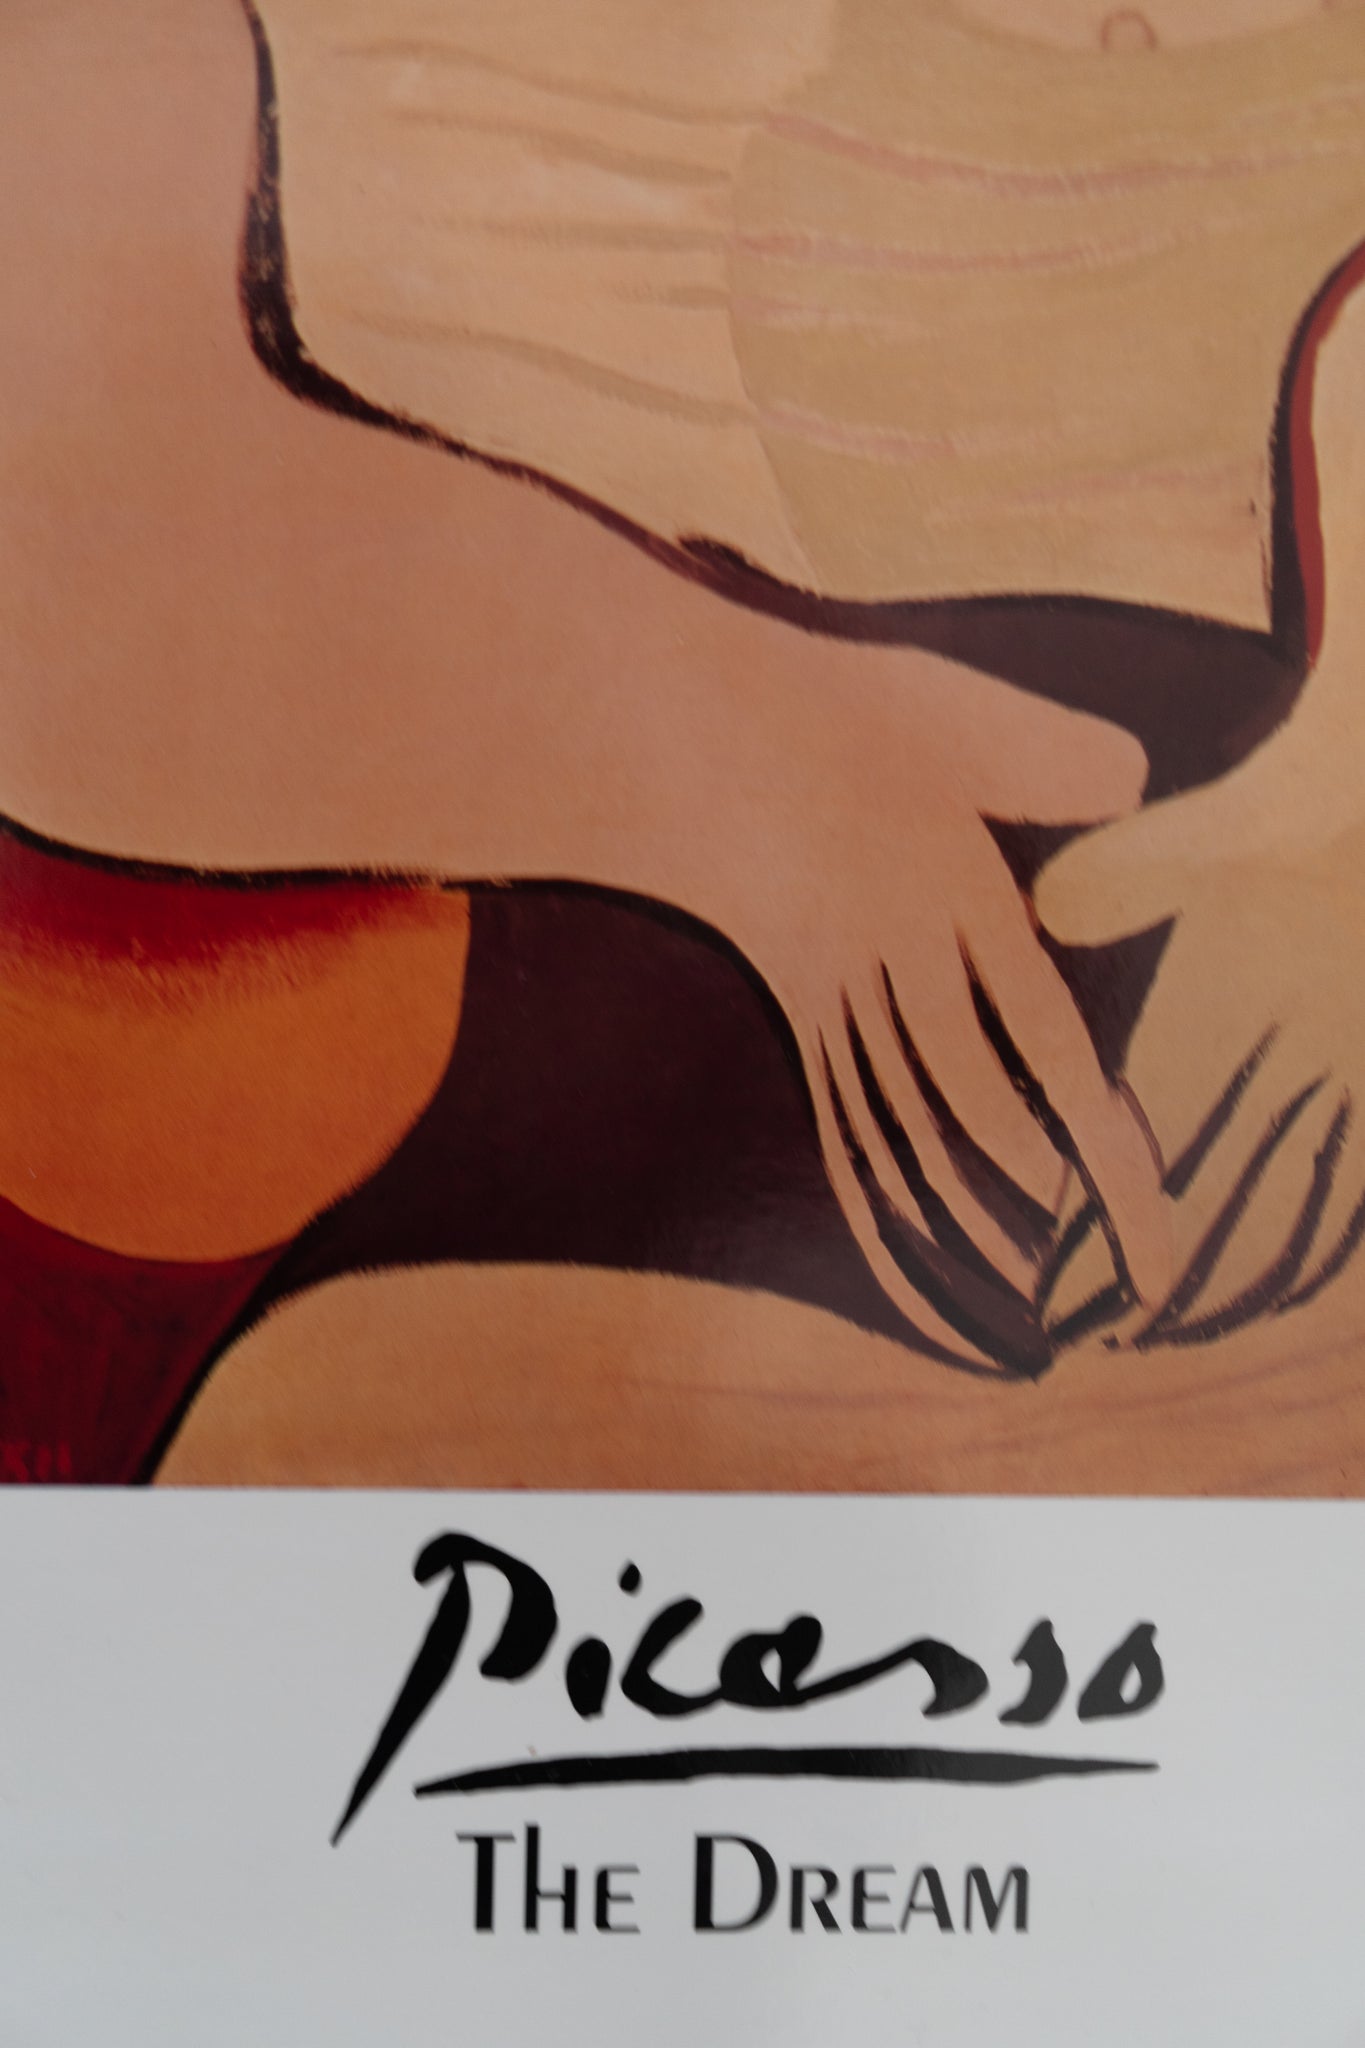 Pablo Picasso 'The Dream (Le Rêve)' (1932)